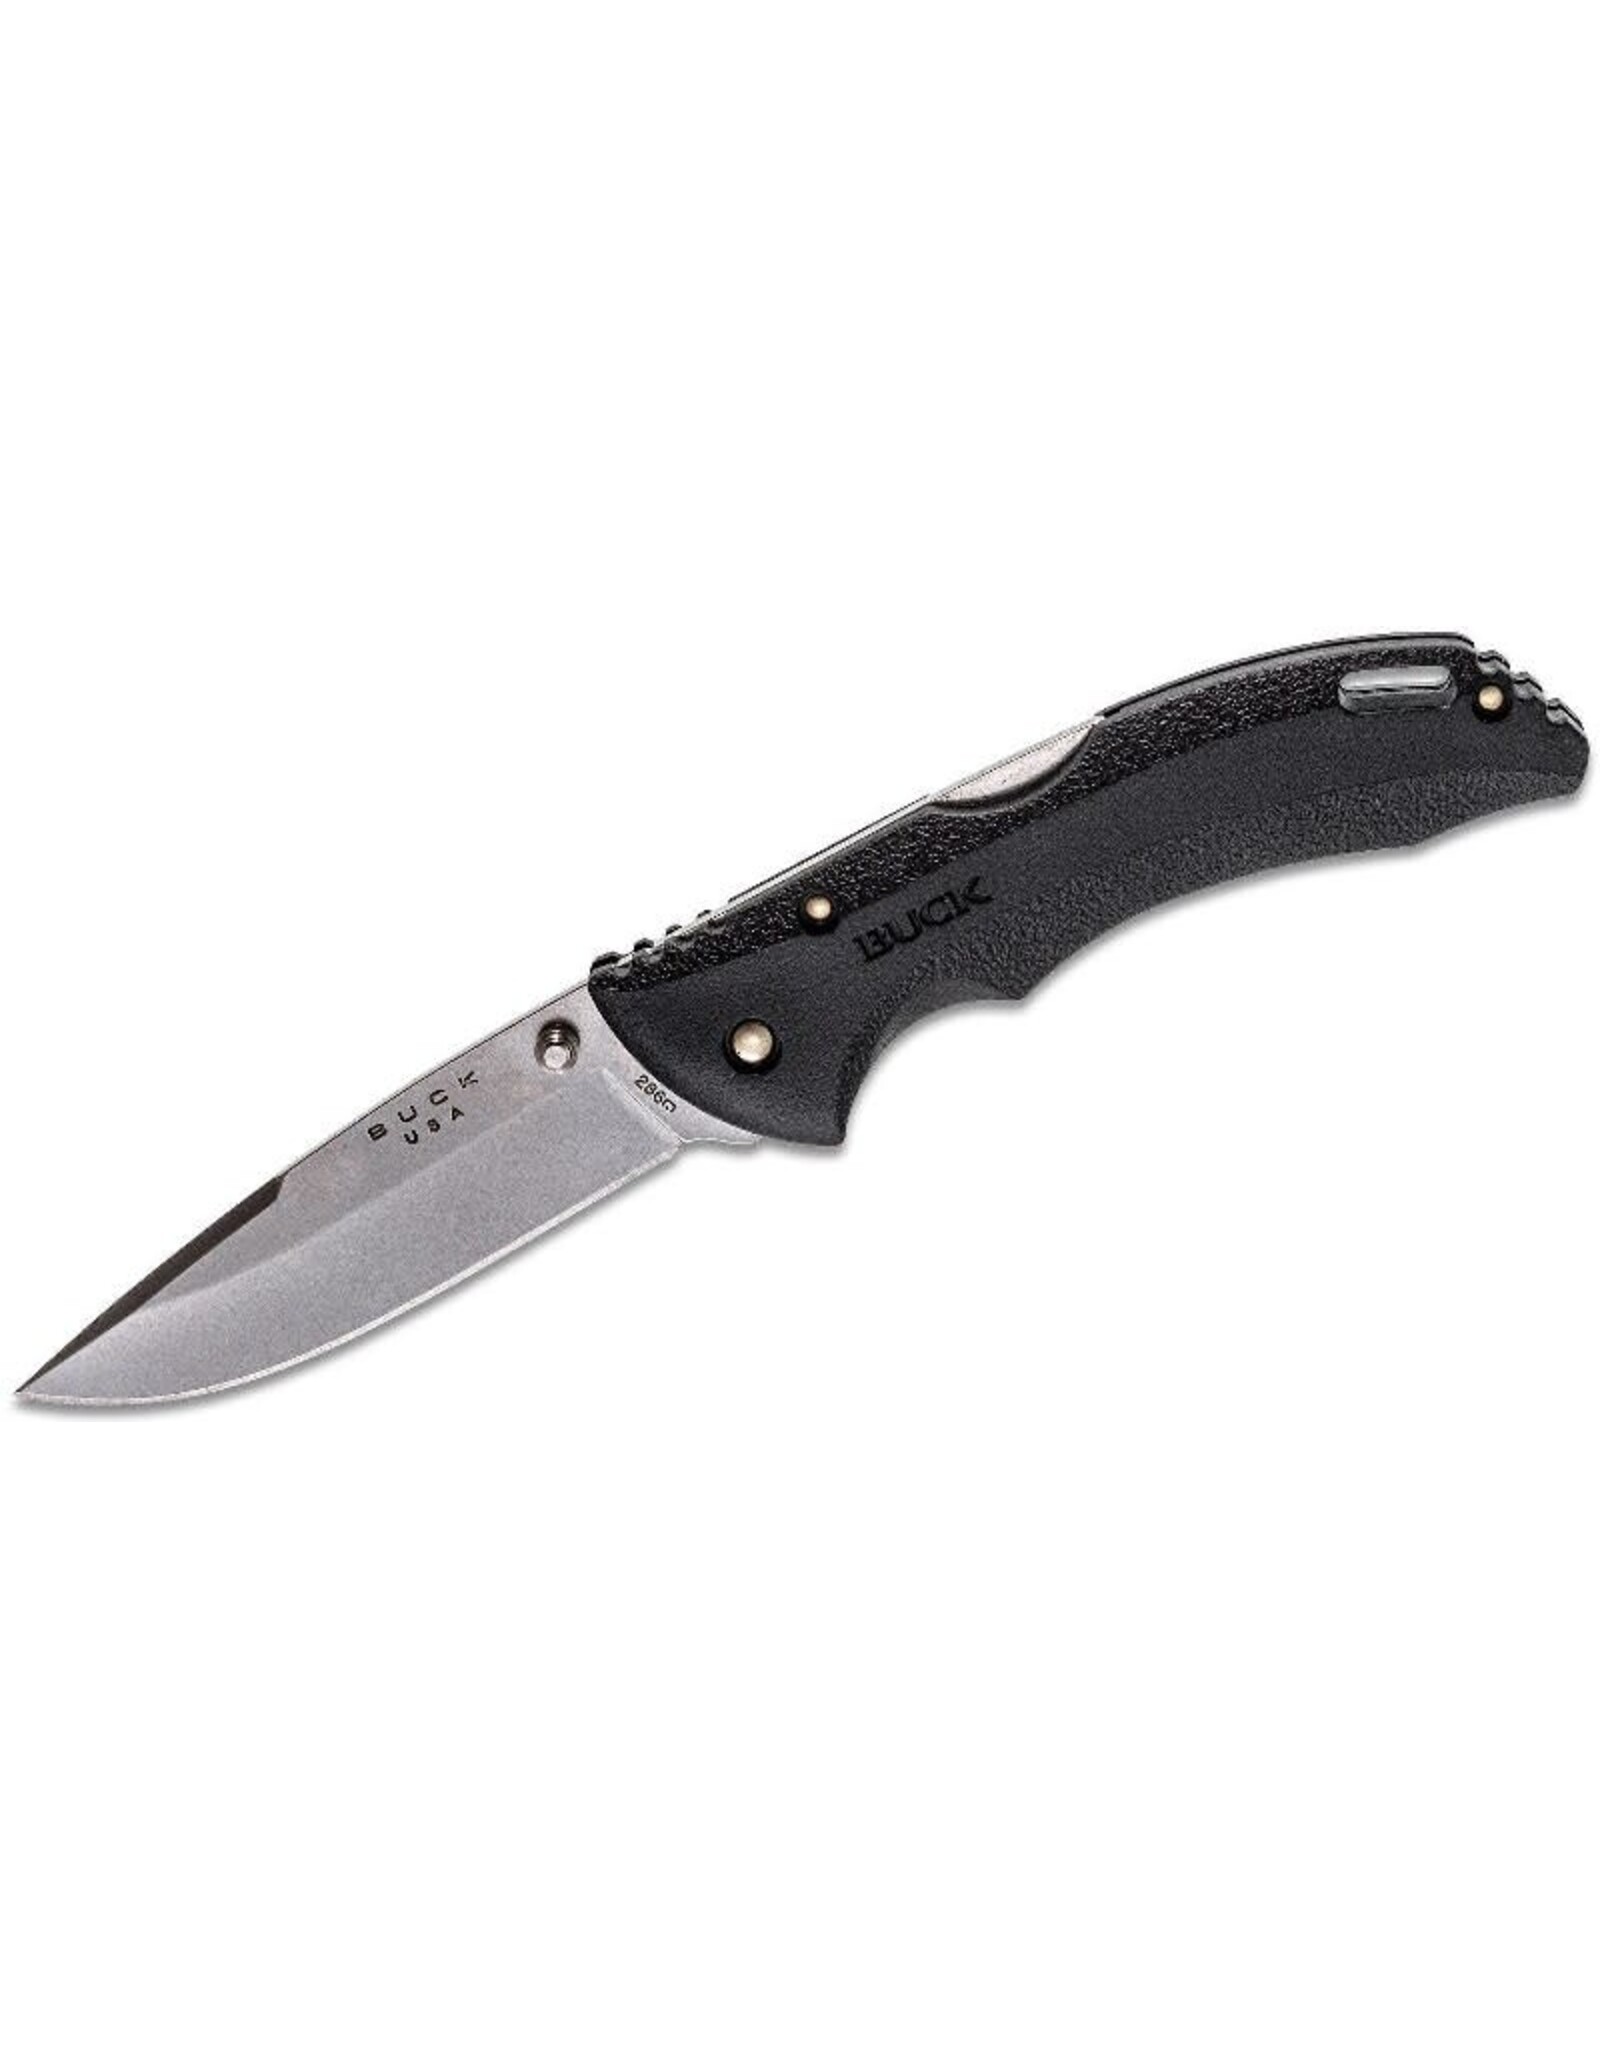 Buck Knives - Bantam - All Black - 3-3/4" Blade